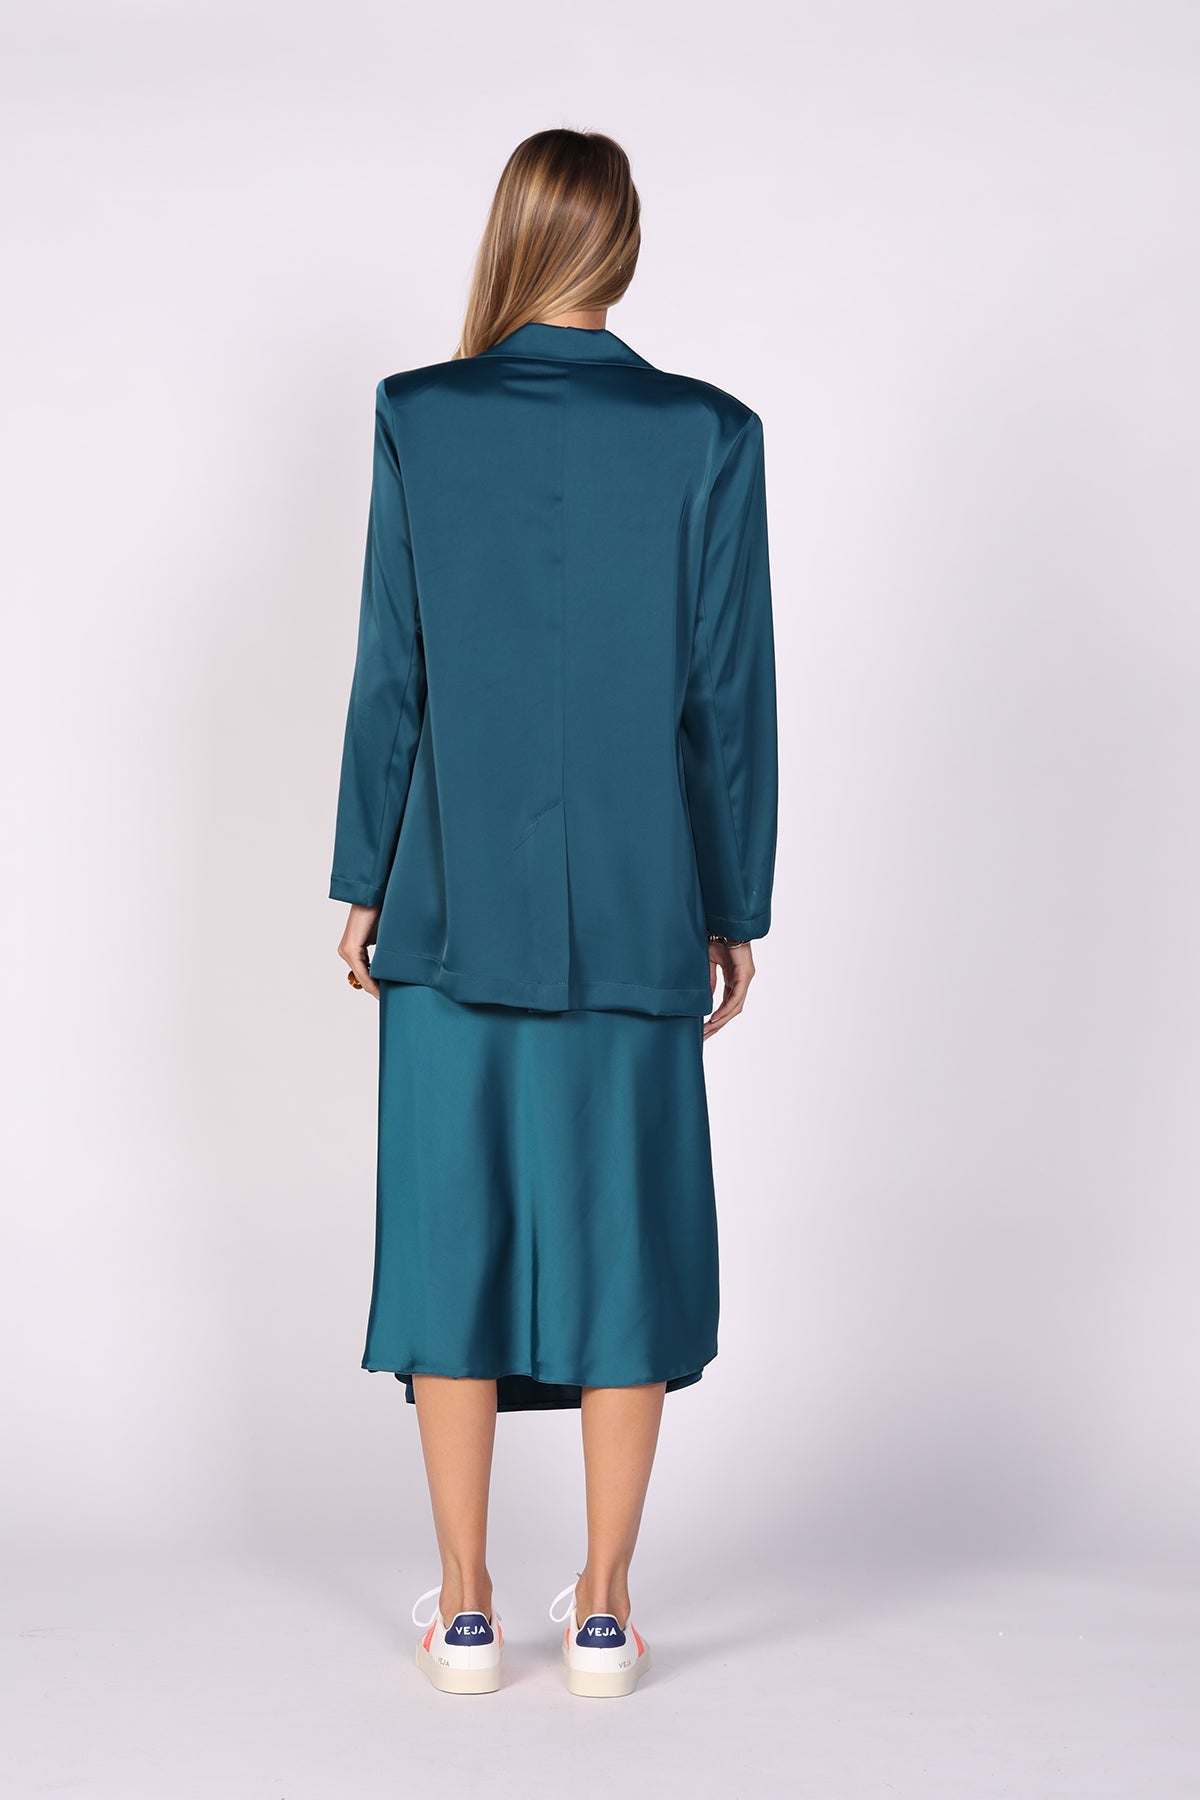 חצאית אלכס בצבע כחול - Dana Sidi